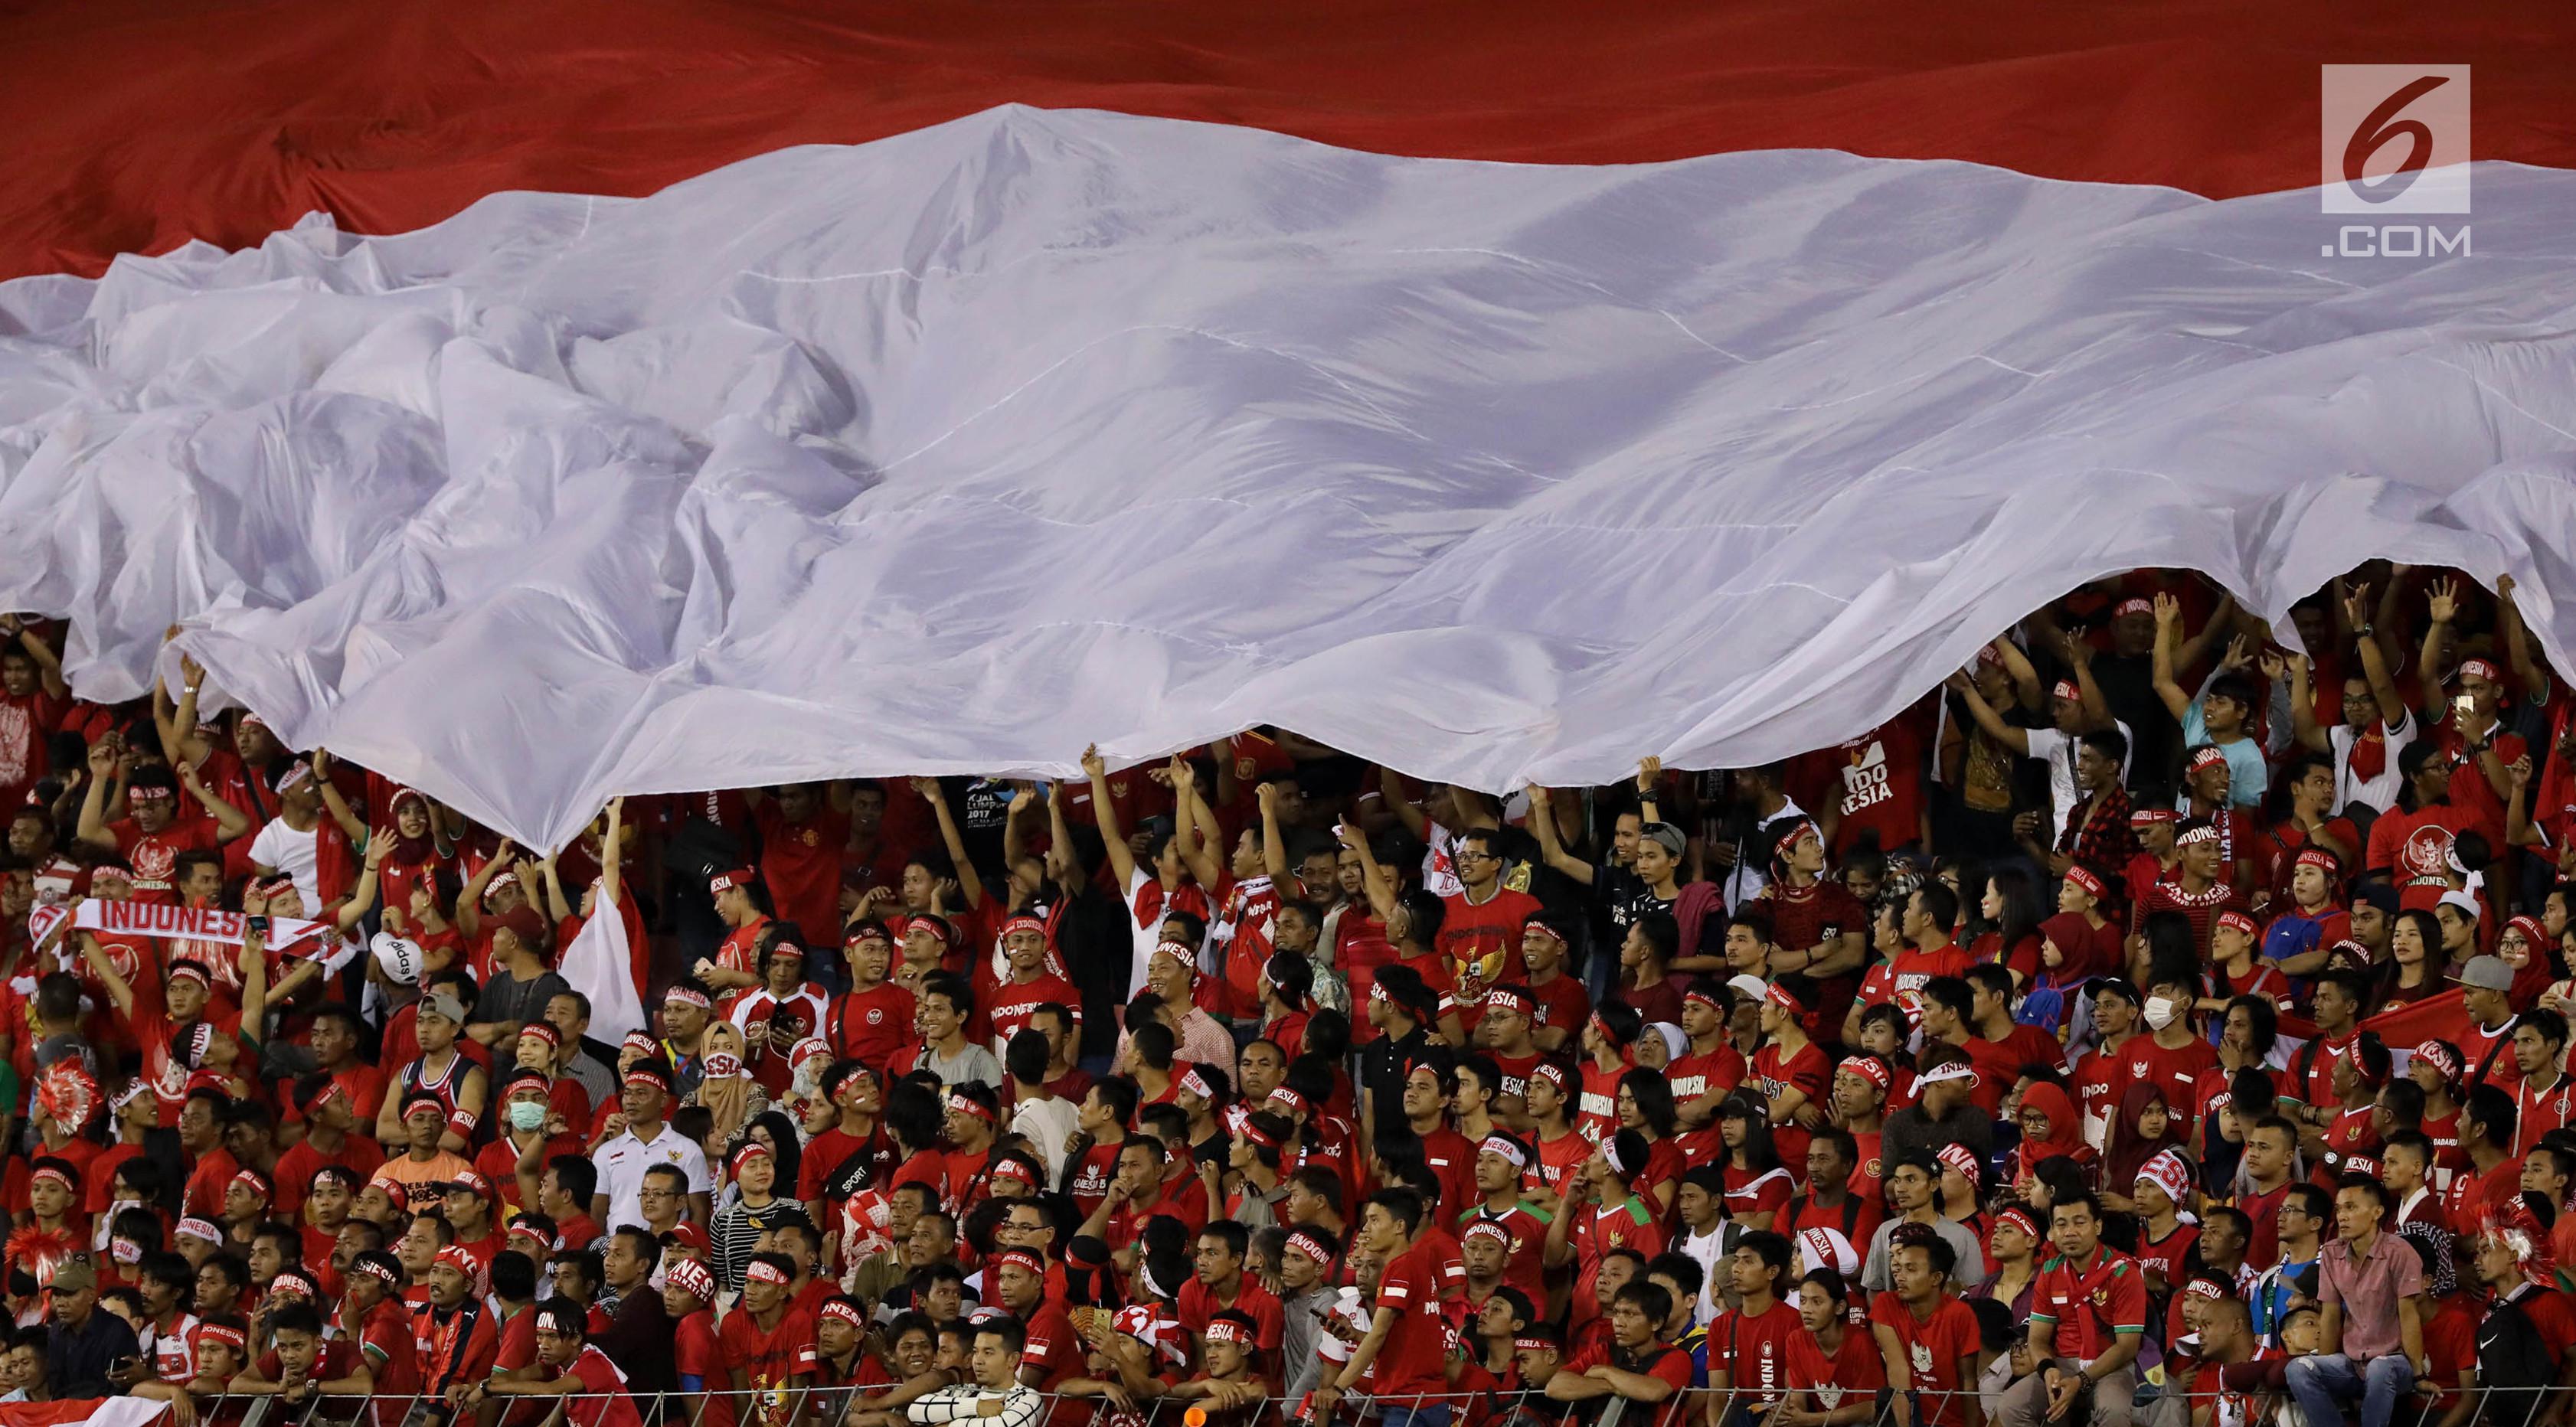 Bendera Merah Putih raksasa dibawa pendukung timnas U-22 Indonesia saat laga penyisihan Grup B melawan Timnas Vietnam U-22 di Stadion Selayang, Selangor, Selasa (22/8). Indonesia bermain imbang melawan Vietnam dengan skor 0-0. (Liputan6.com/Faizal Fanani)